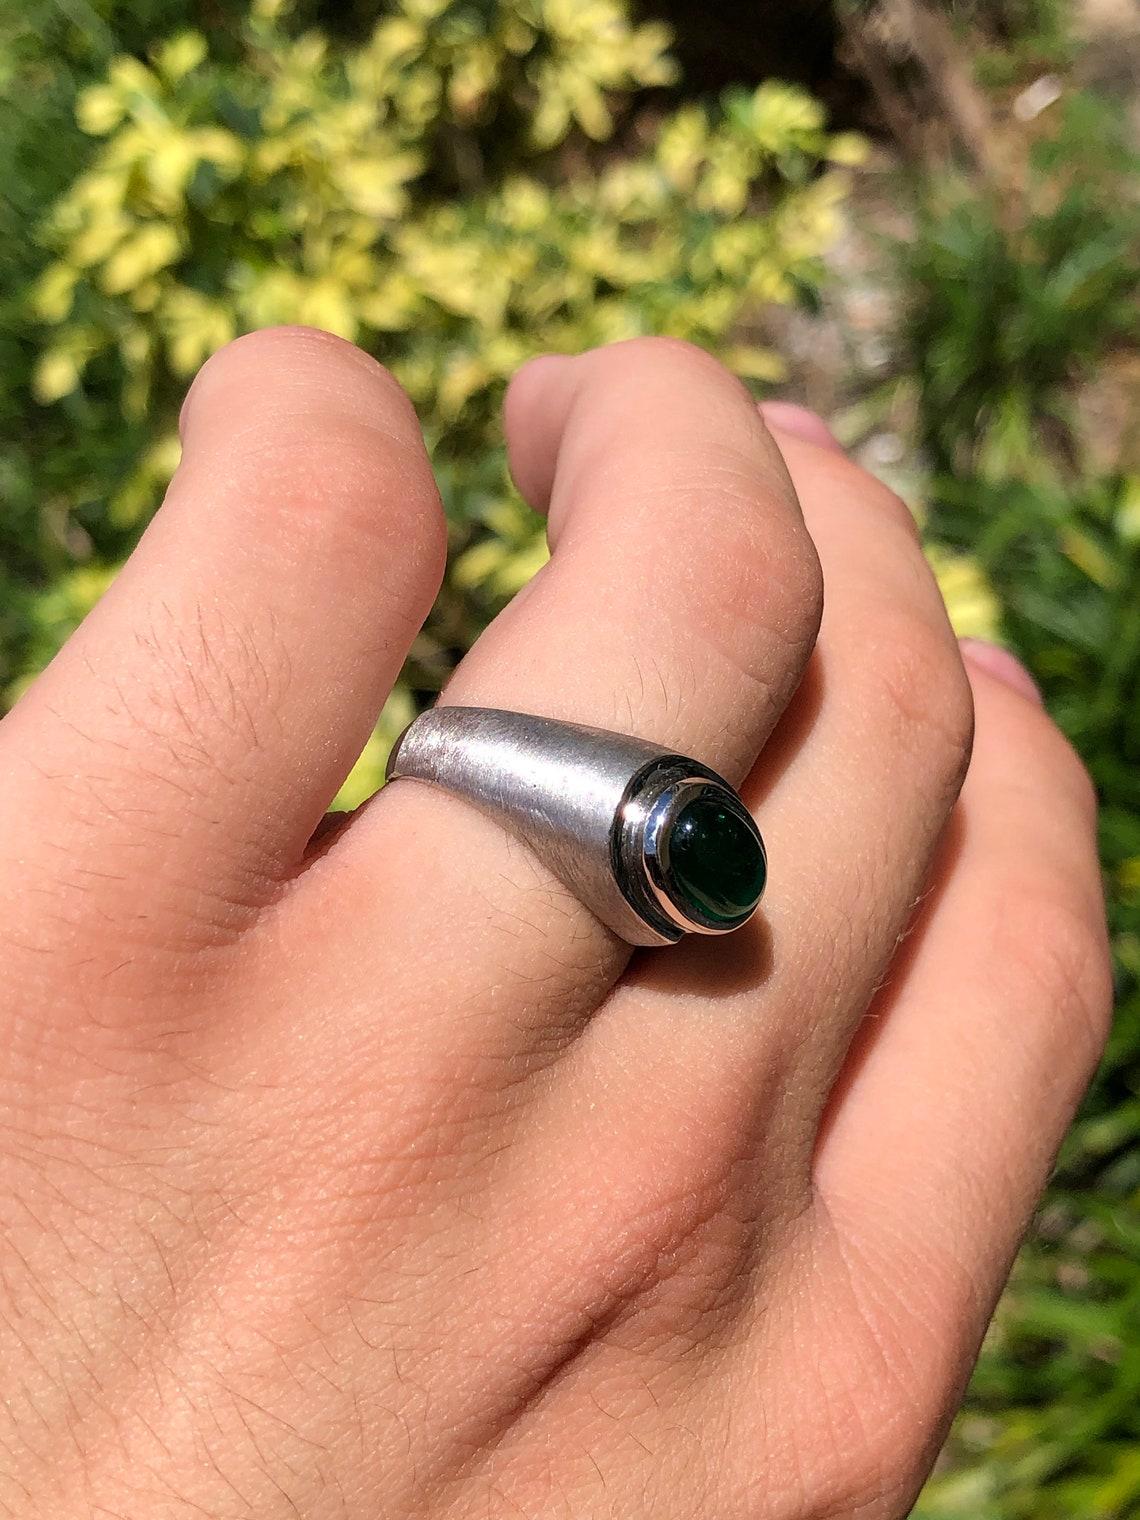 men's emerald cabochon ring